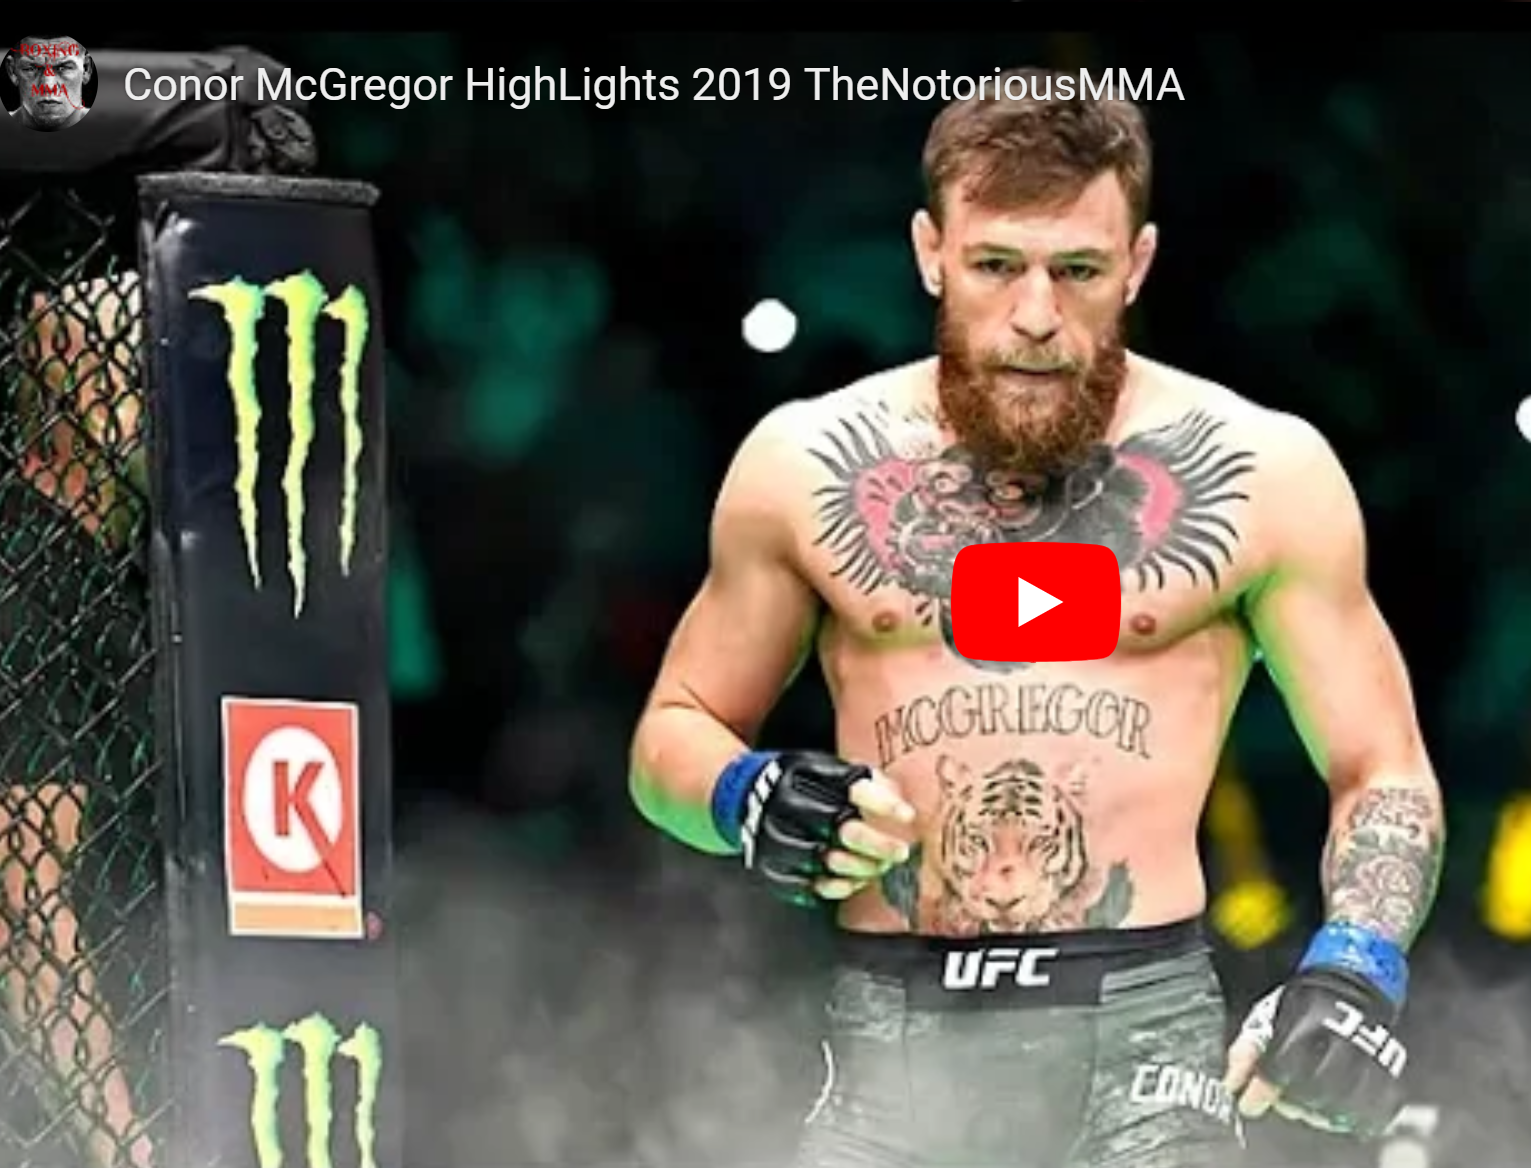 Une superbe vidéo de Conor McGregor : Combats/Training